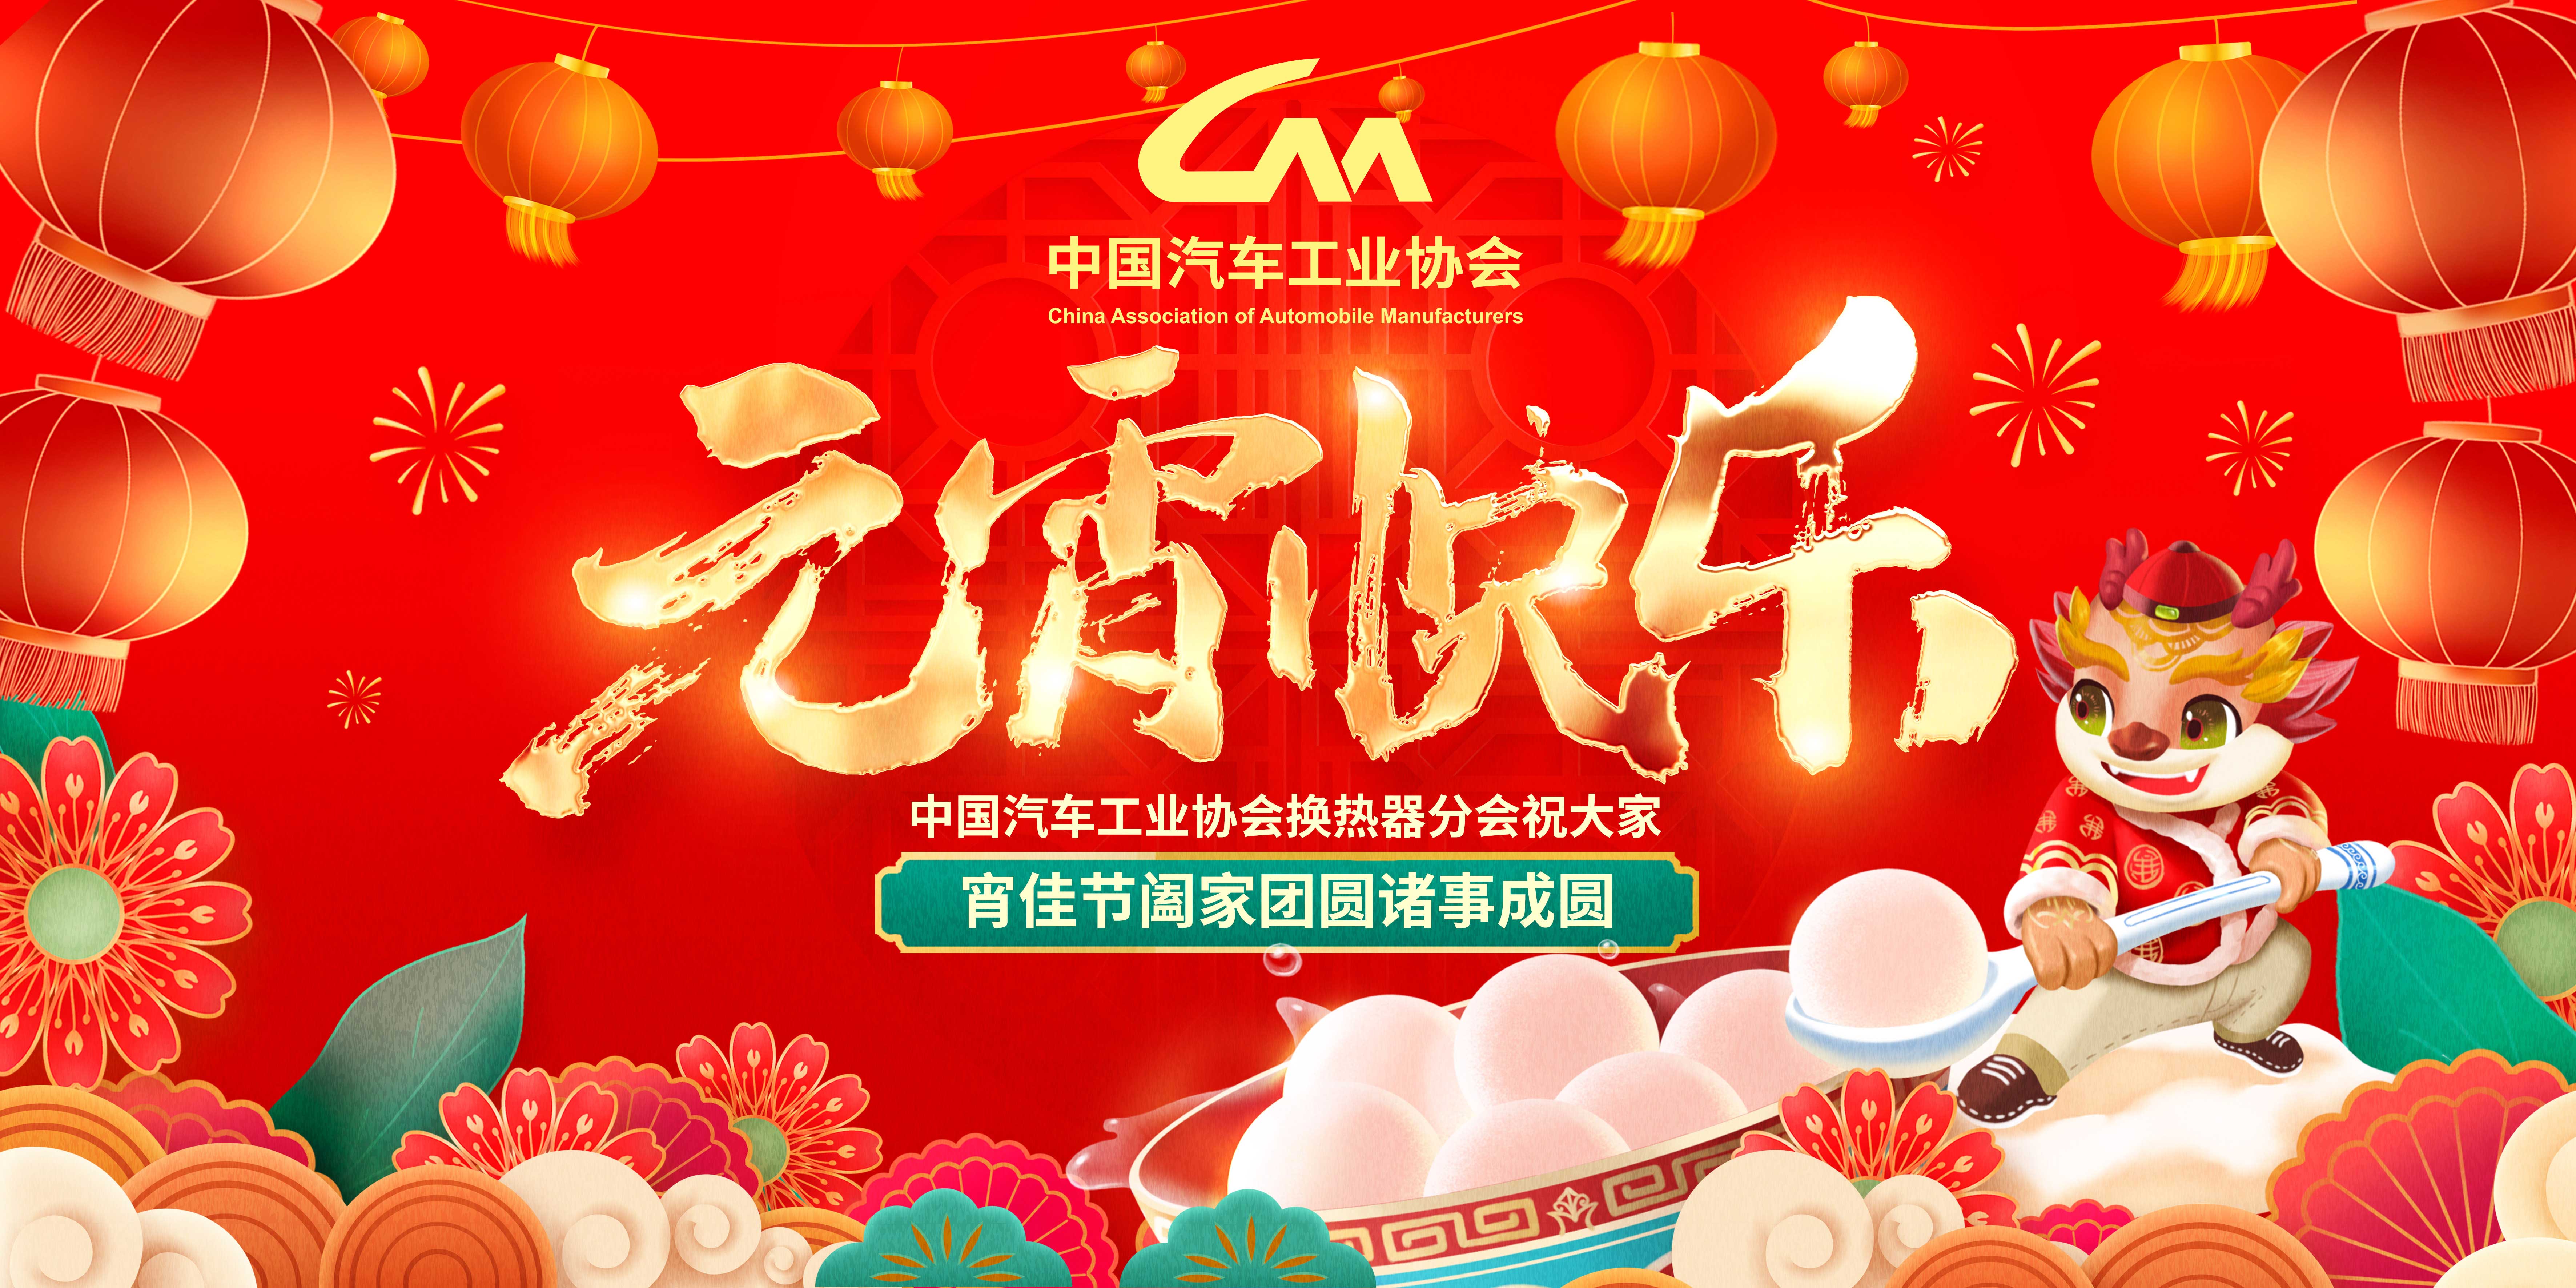 中国汽车工业协会换热器分会祝大家元宵快乐！